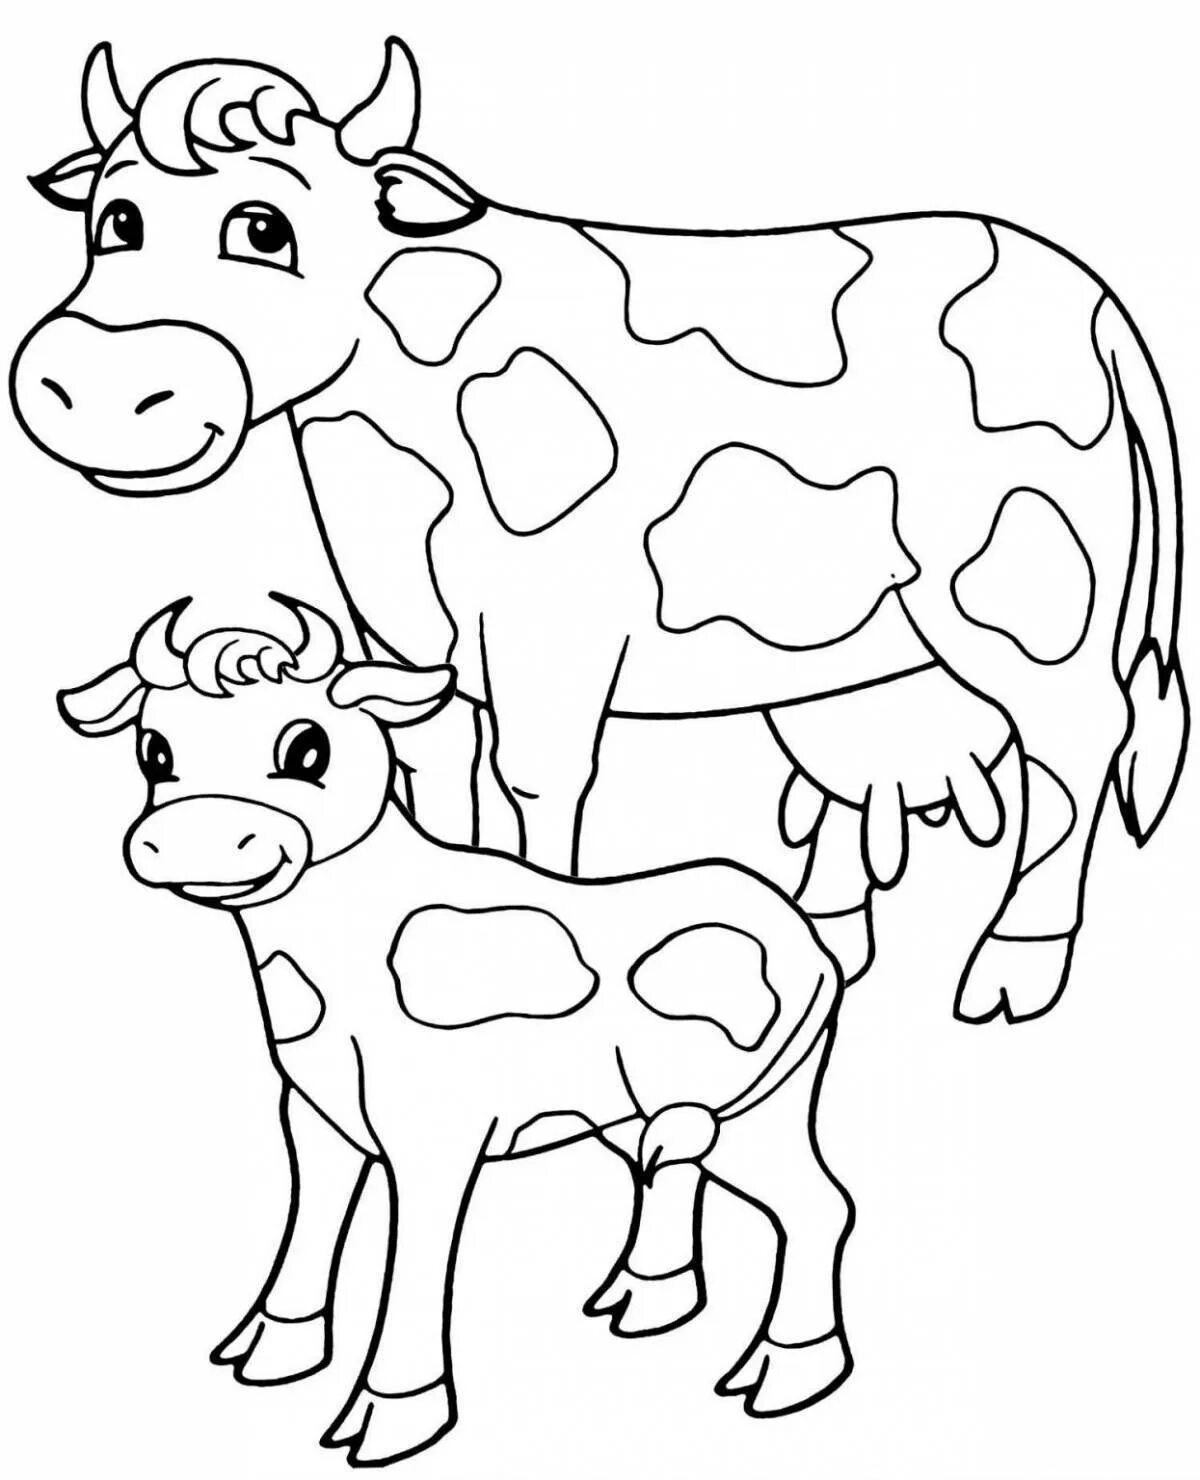 Раскраски для детей 3 года коровы. Раскраска корова. Корова раскраска для детей. Раскраска корова с теленком. Раскраска корова с теленком для детей.